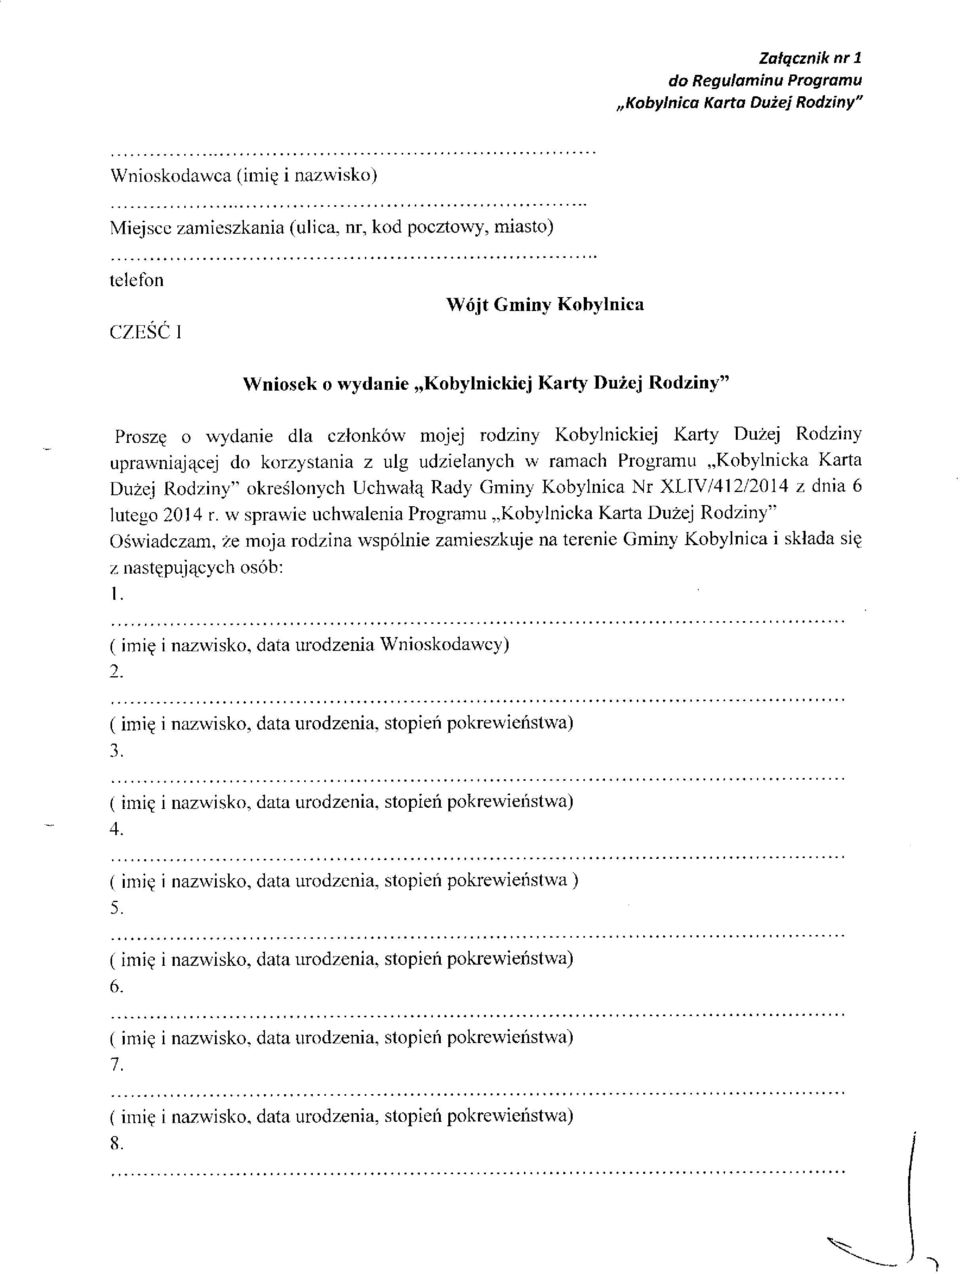 udzielanych w ramach Programu,,Kobylnicka Karta Du2ej l{odziny" okredlonych Uchwalq Rady Gminy Kobylnica Nr XLIY 141212014 z dnia 6 lutego 2014 r.